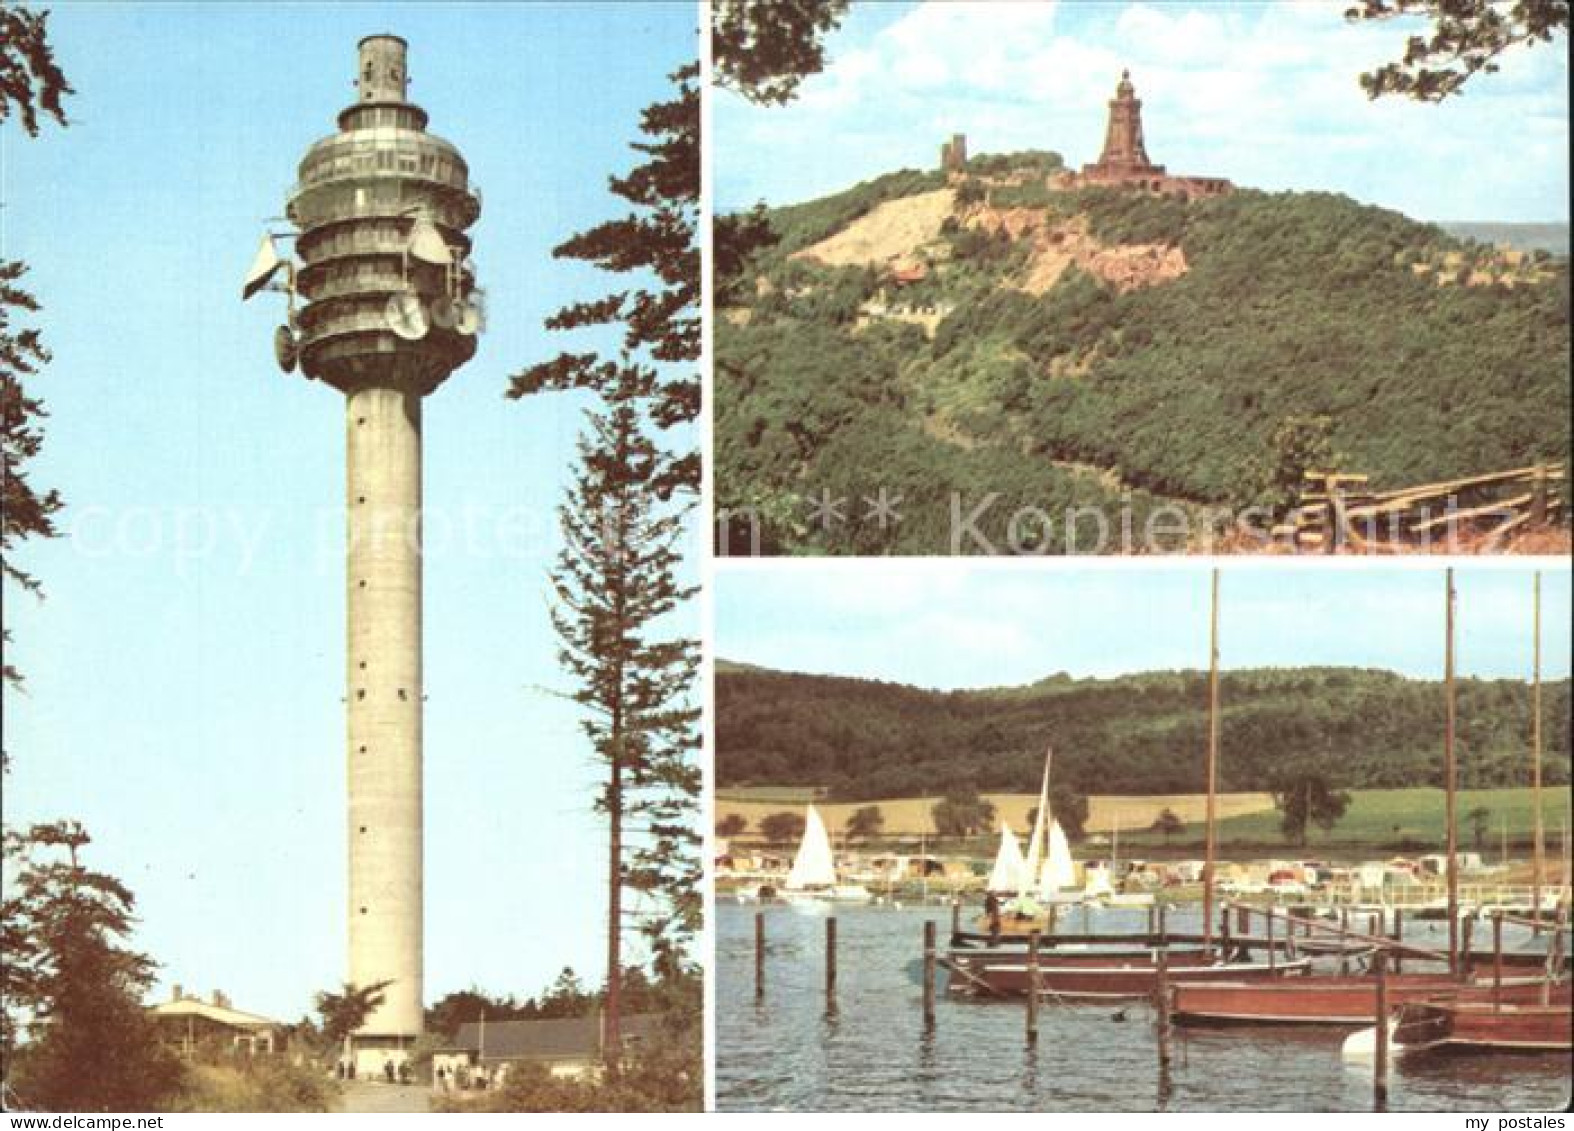 72304601 Kyffhaeuser Fernsehturm Denkmal Kulpenberg Talsperre Kelbra  Kyffhaeuse - Bad Frankenhausen